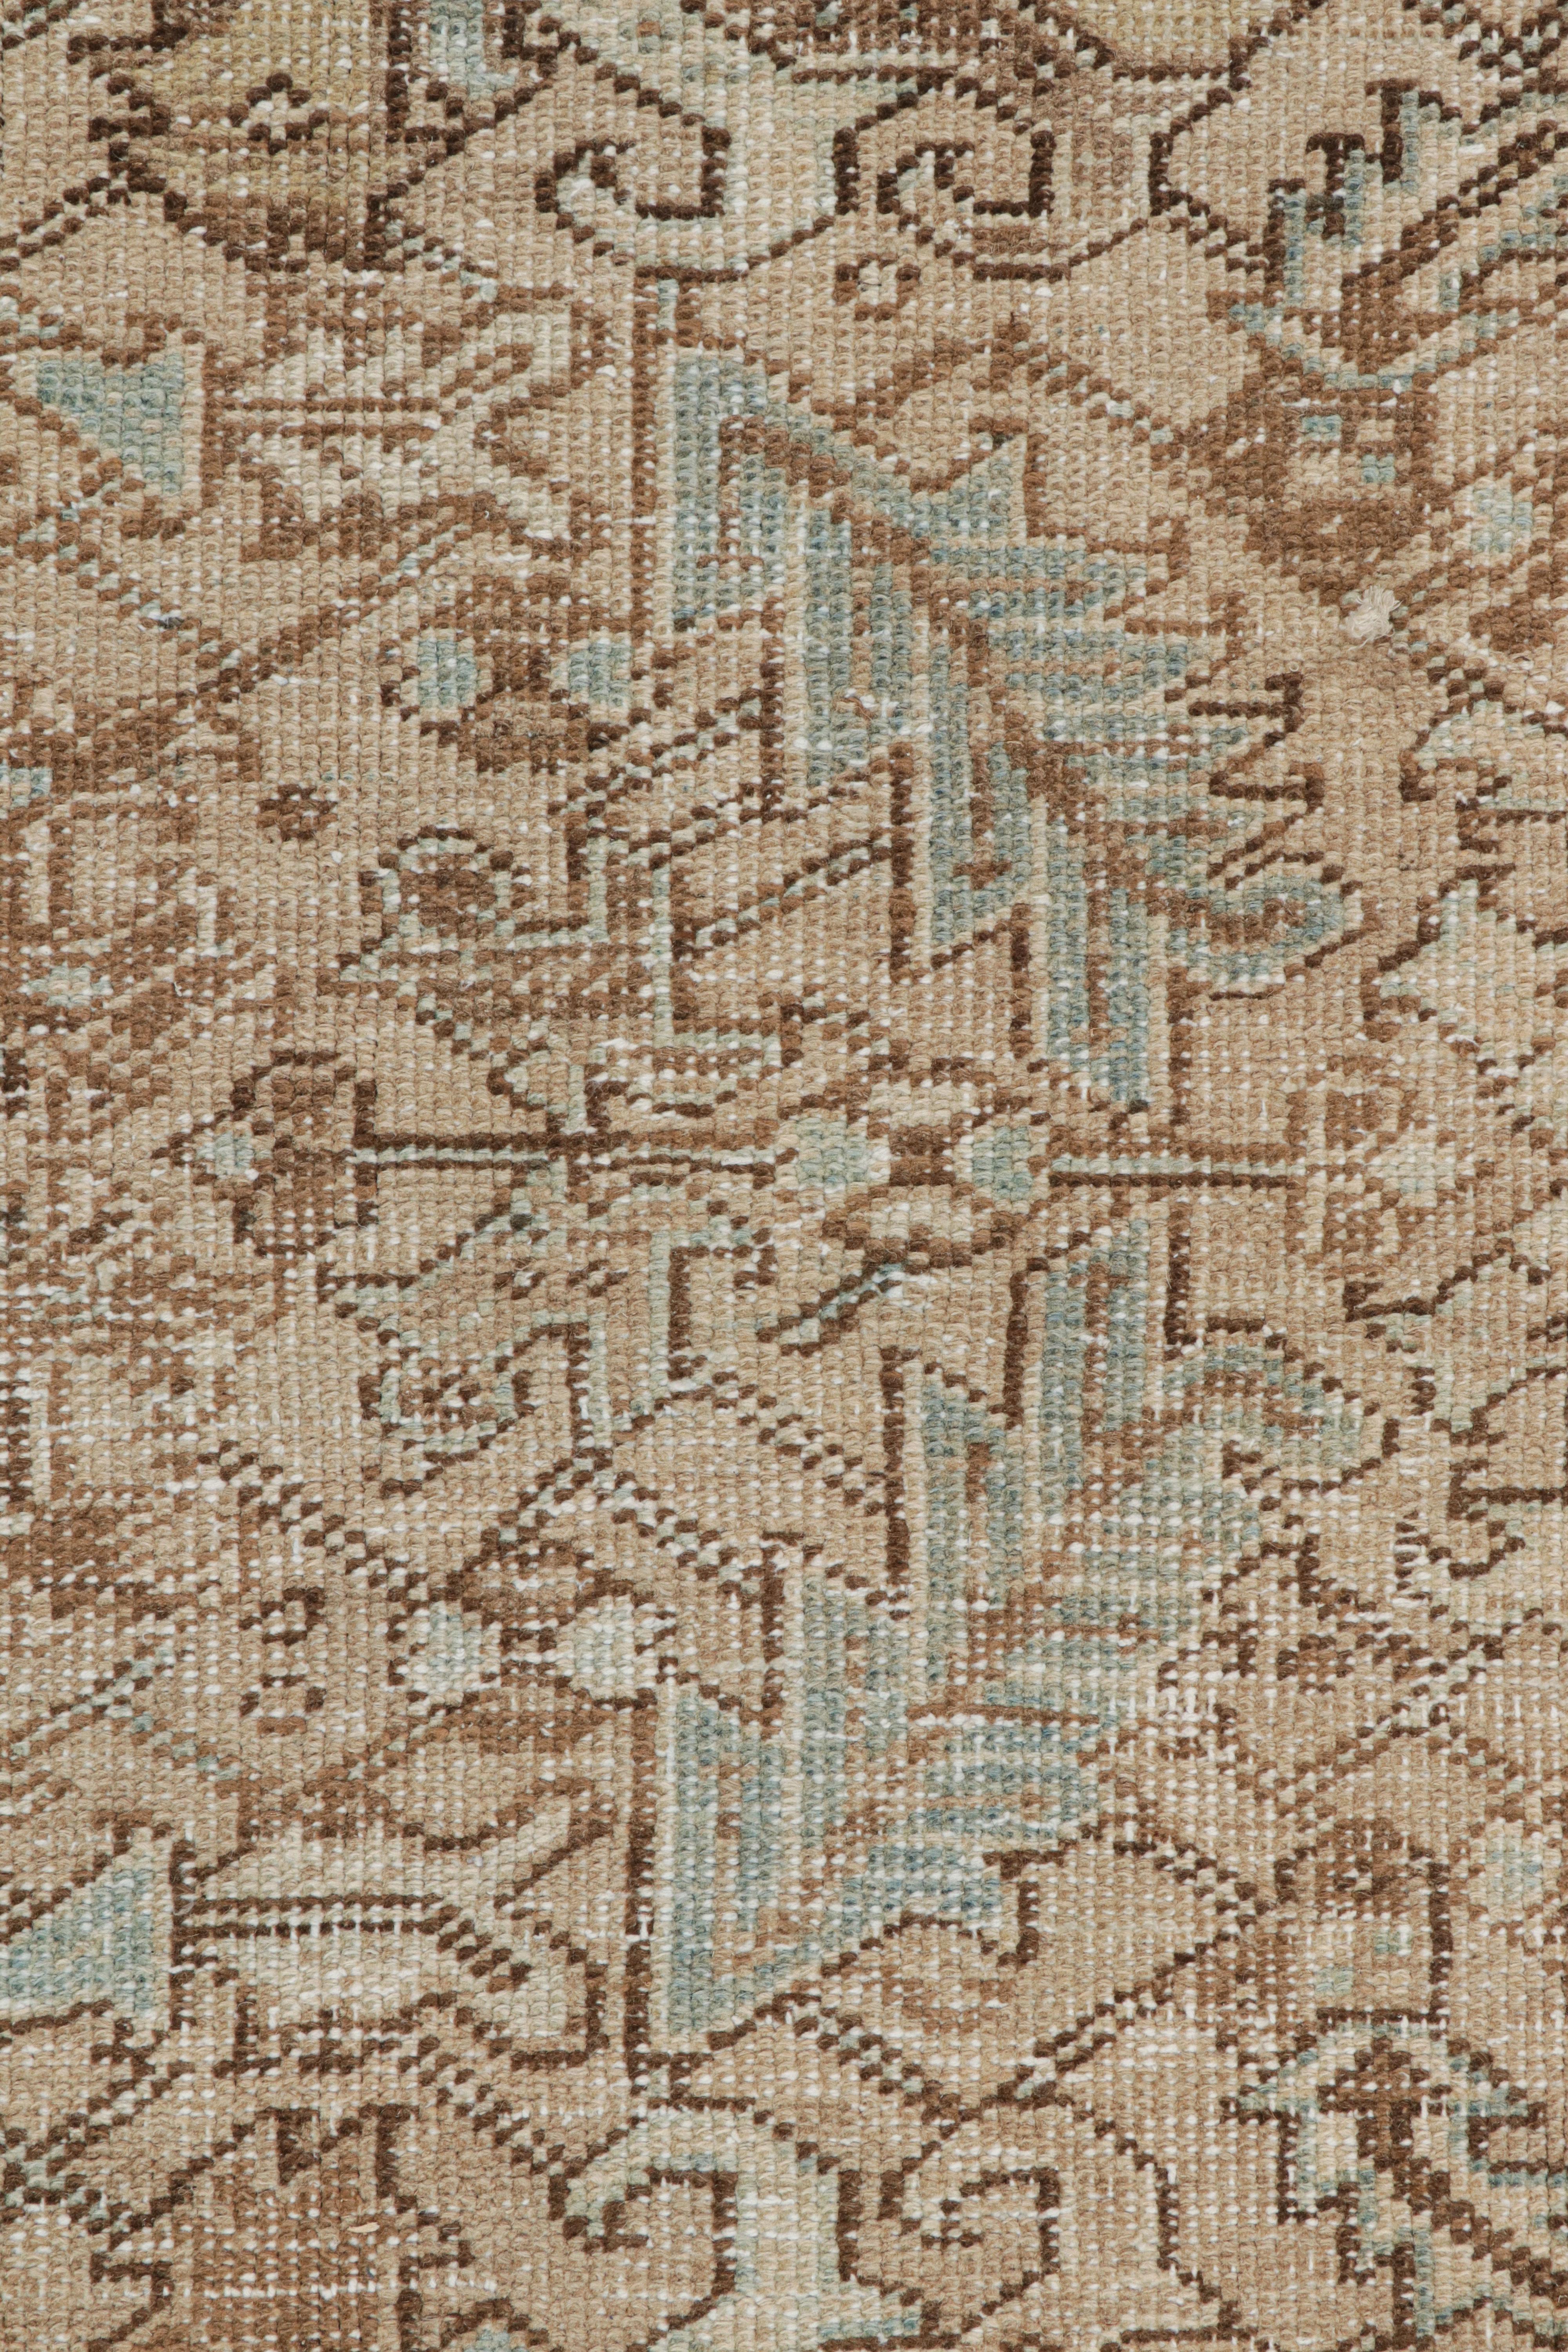 Türkischer Teppich in Beige-Braun und Blau mit geometrischen Mustern, von Rug & Kilim (Handgeknüpft) im Angebot